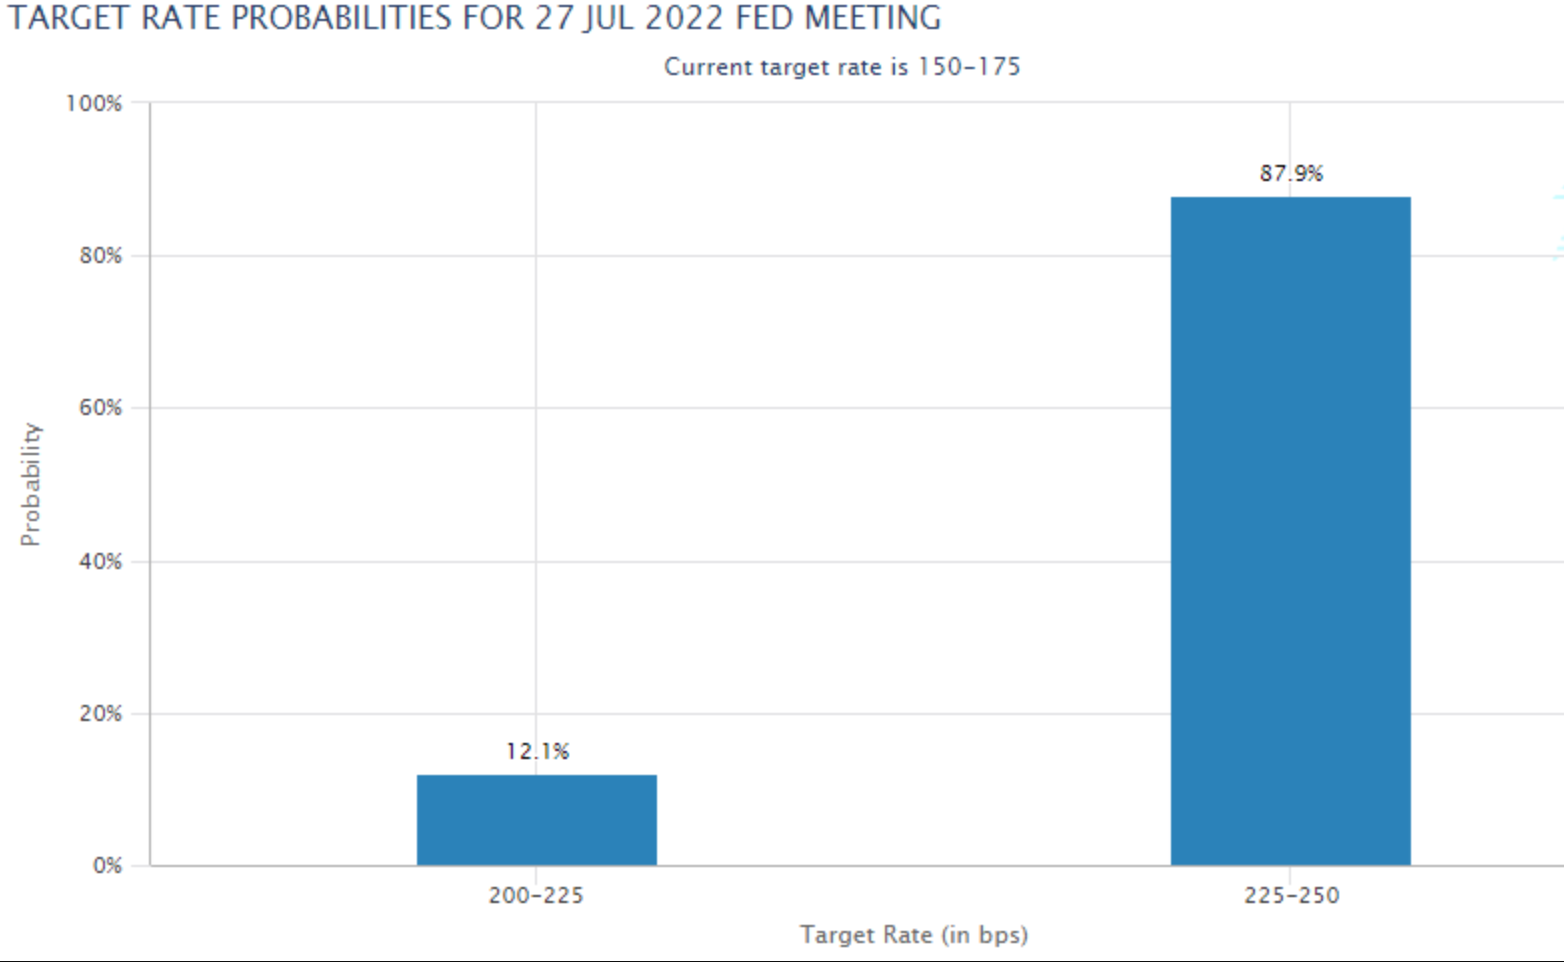 [Đánh giá trước] Biên bản họp FOMC tháng 6: Cơ hội để USD điều chỉnh giảm?